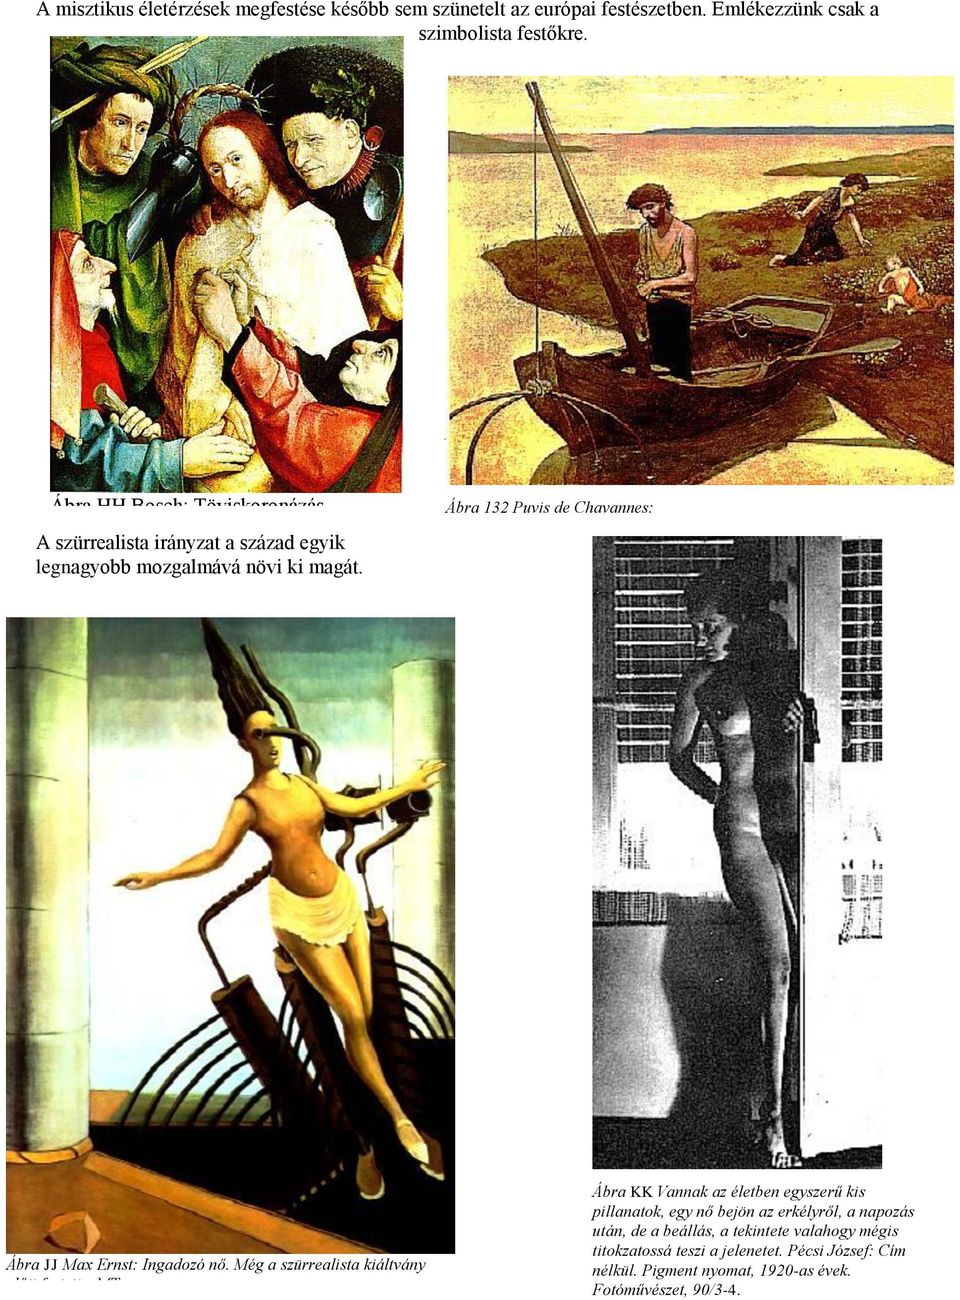 Ábra 132 Puvis de Chavannes: Ábra JJ Max Ernst: Ingadozó nő. Még a szürrealista kiáltvány előtt festette.